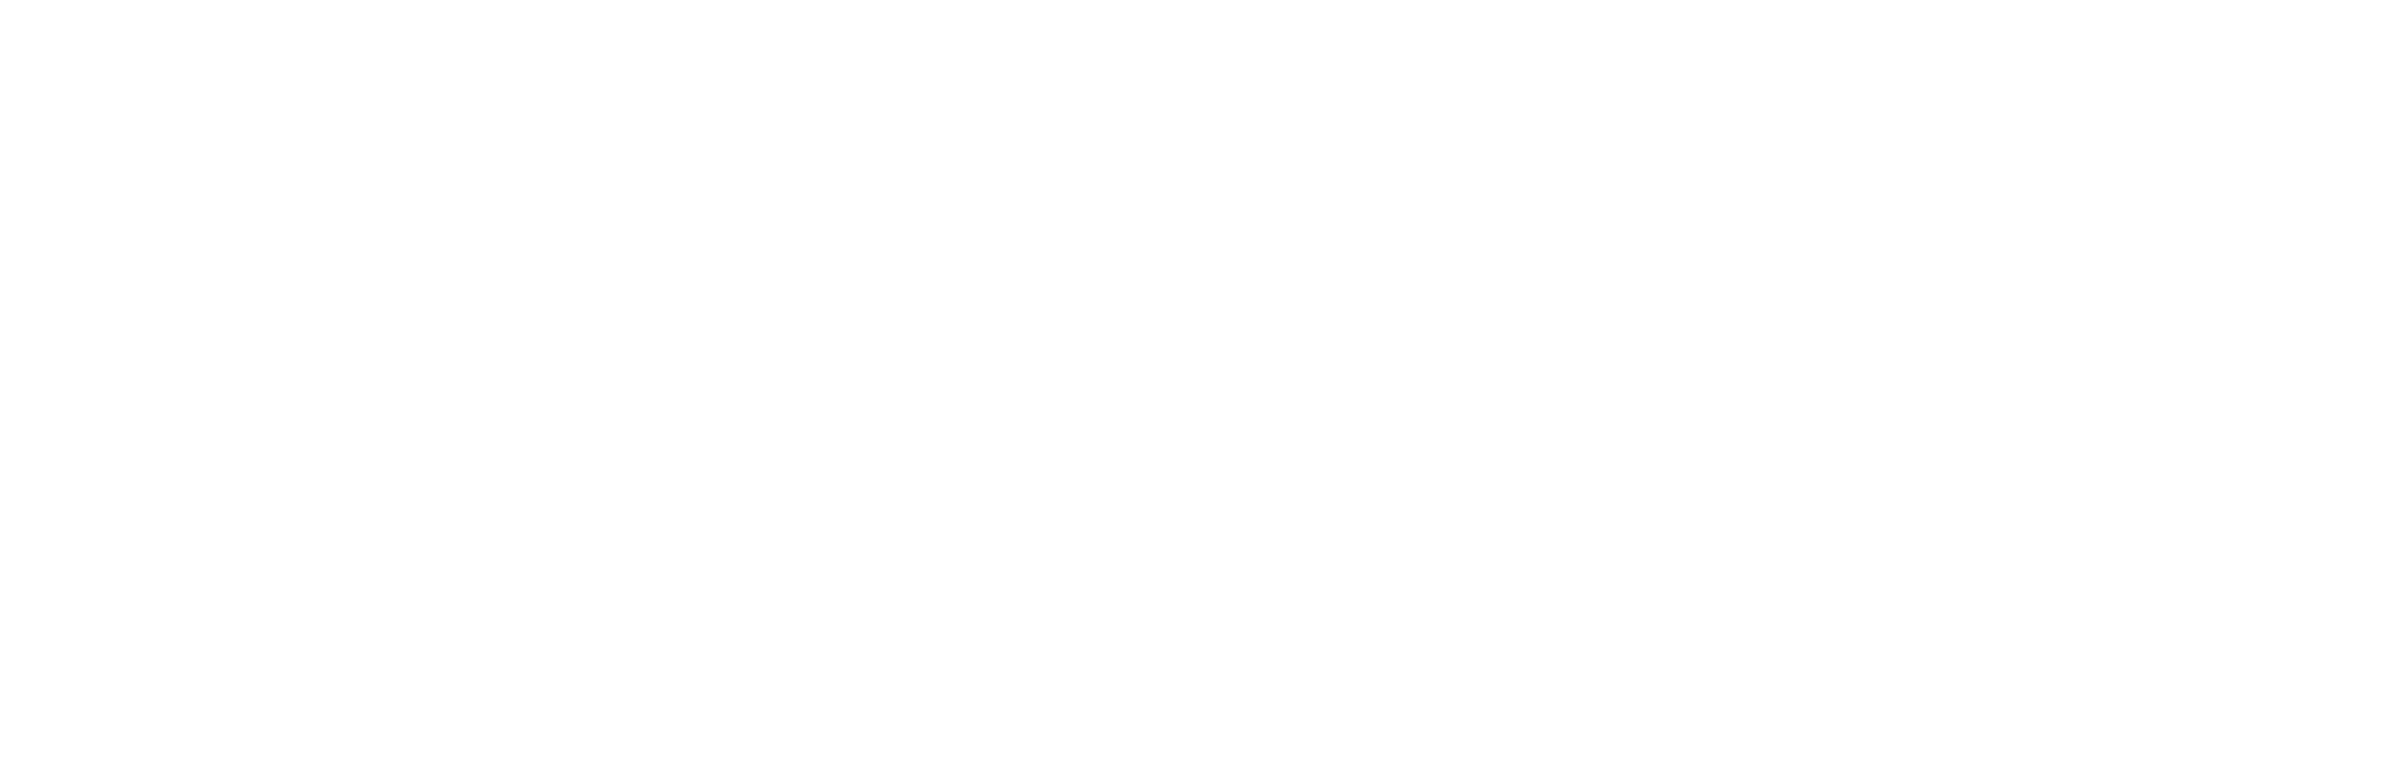 Walnut Street Baptist Church Ministries & Walnut Street Christian School